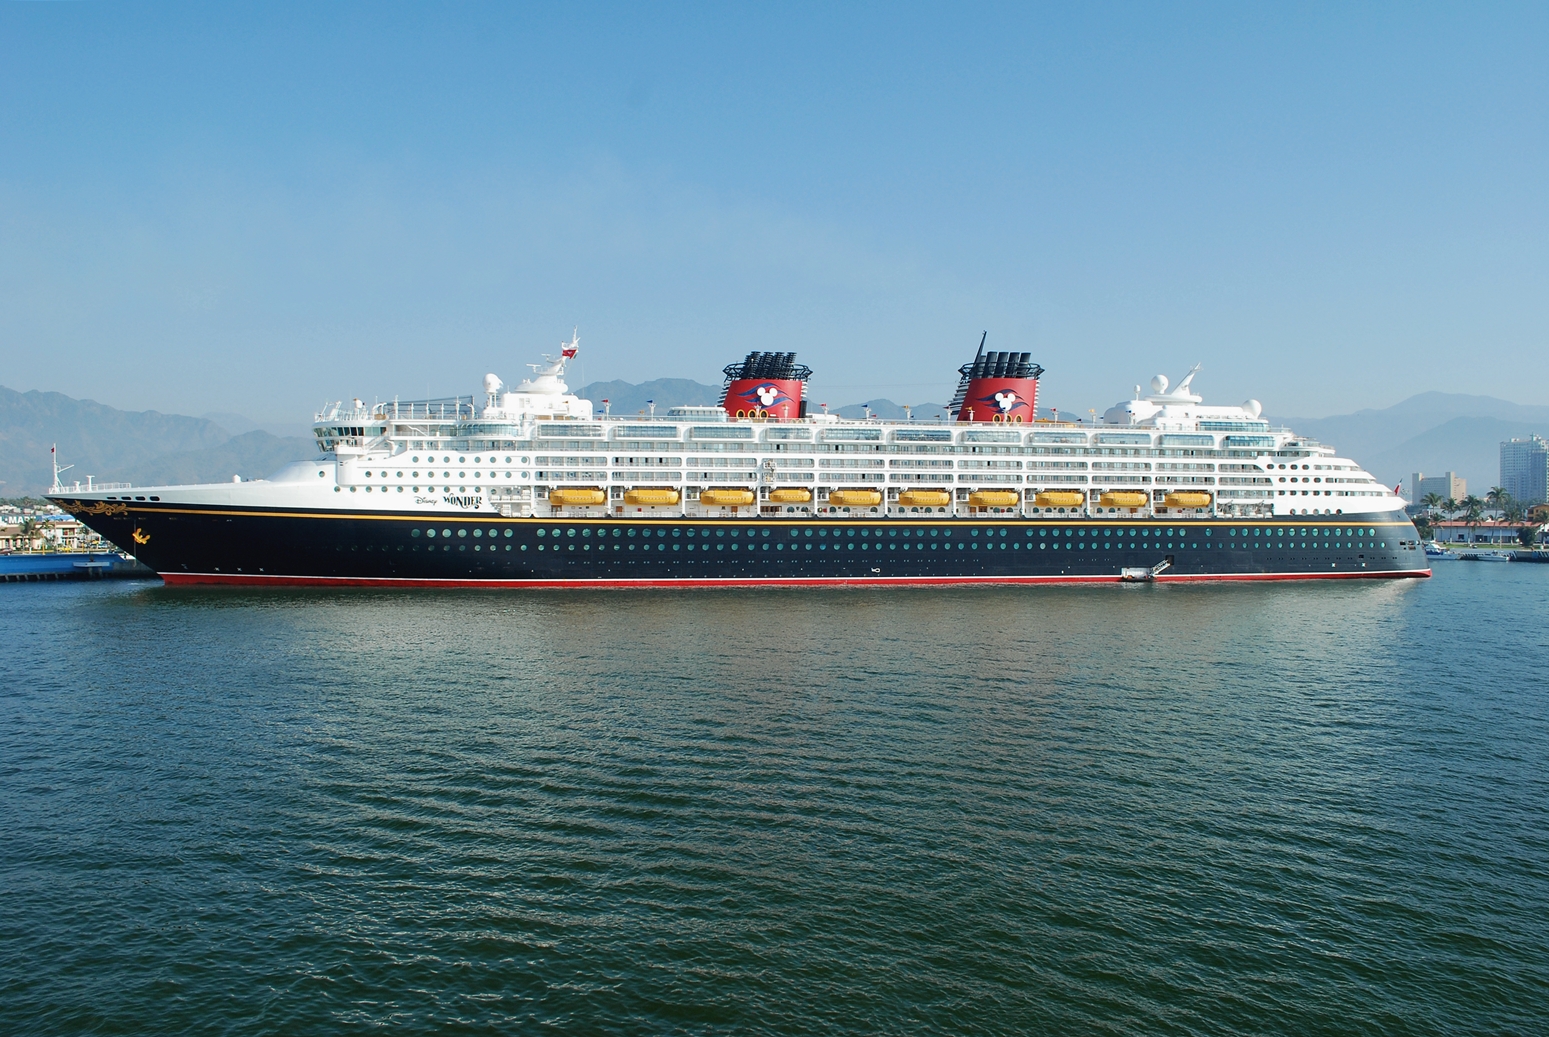 Disney Magic, Disney Magic Cruise, Disney Magic Cruise Ships, Disney cruise ships, Disney Magic cruise ship, Disney Cruise, Disney cruise review, Disney Magic cruise review.